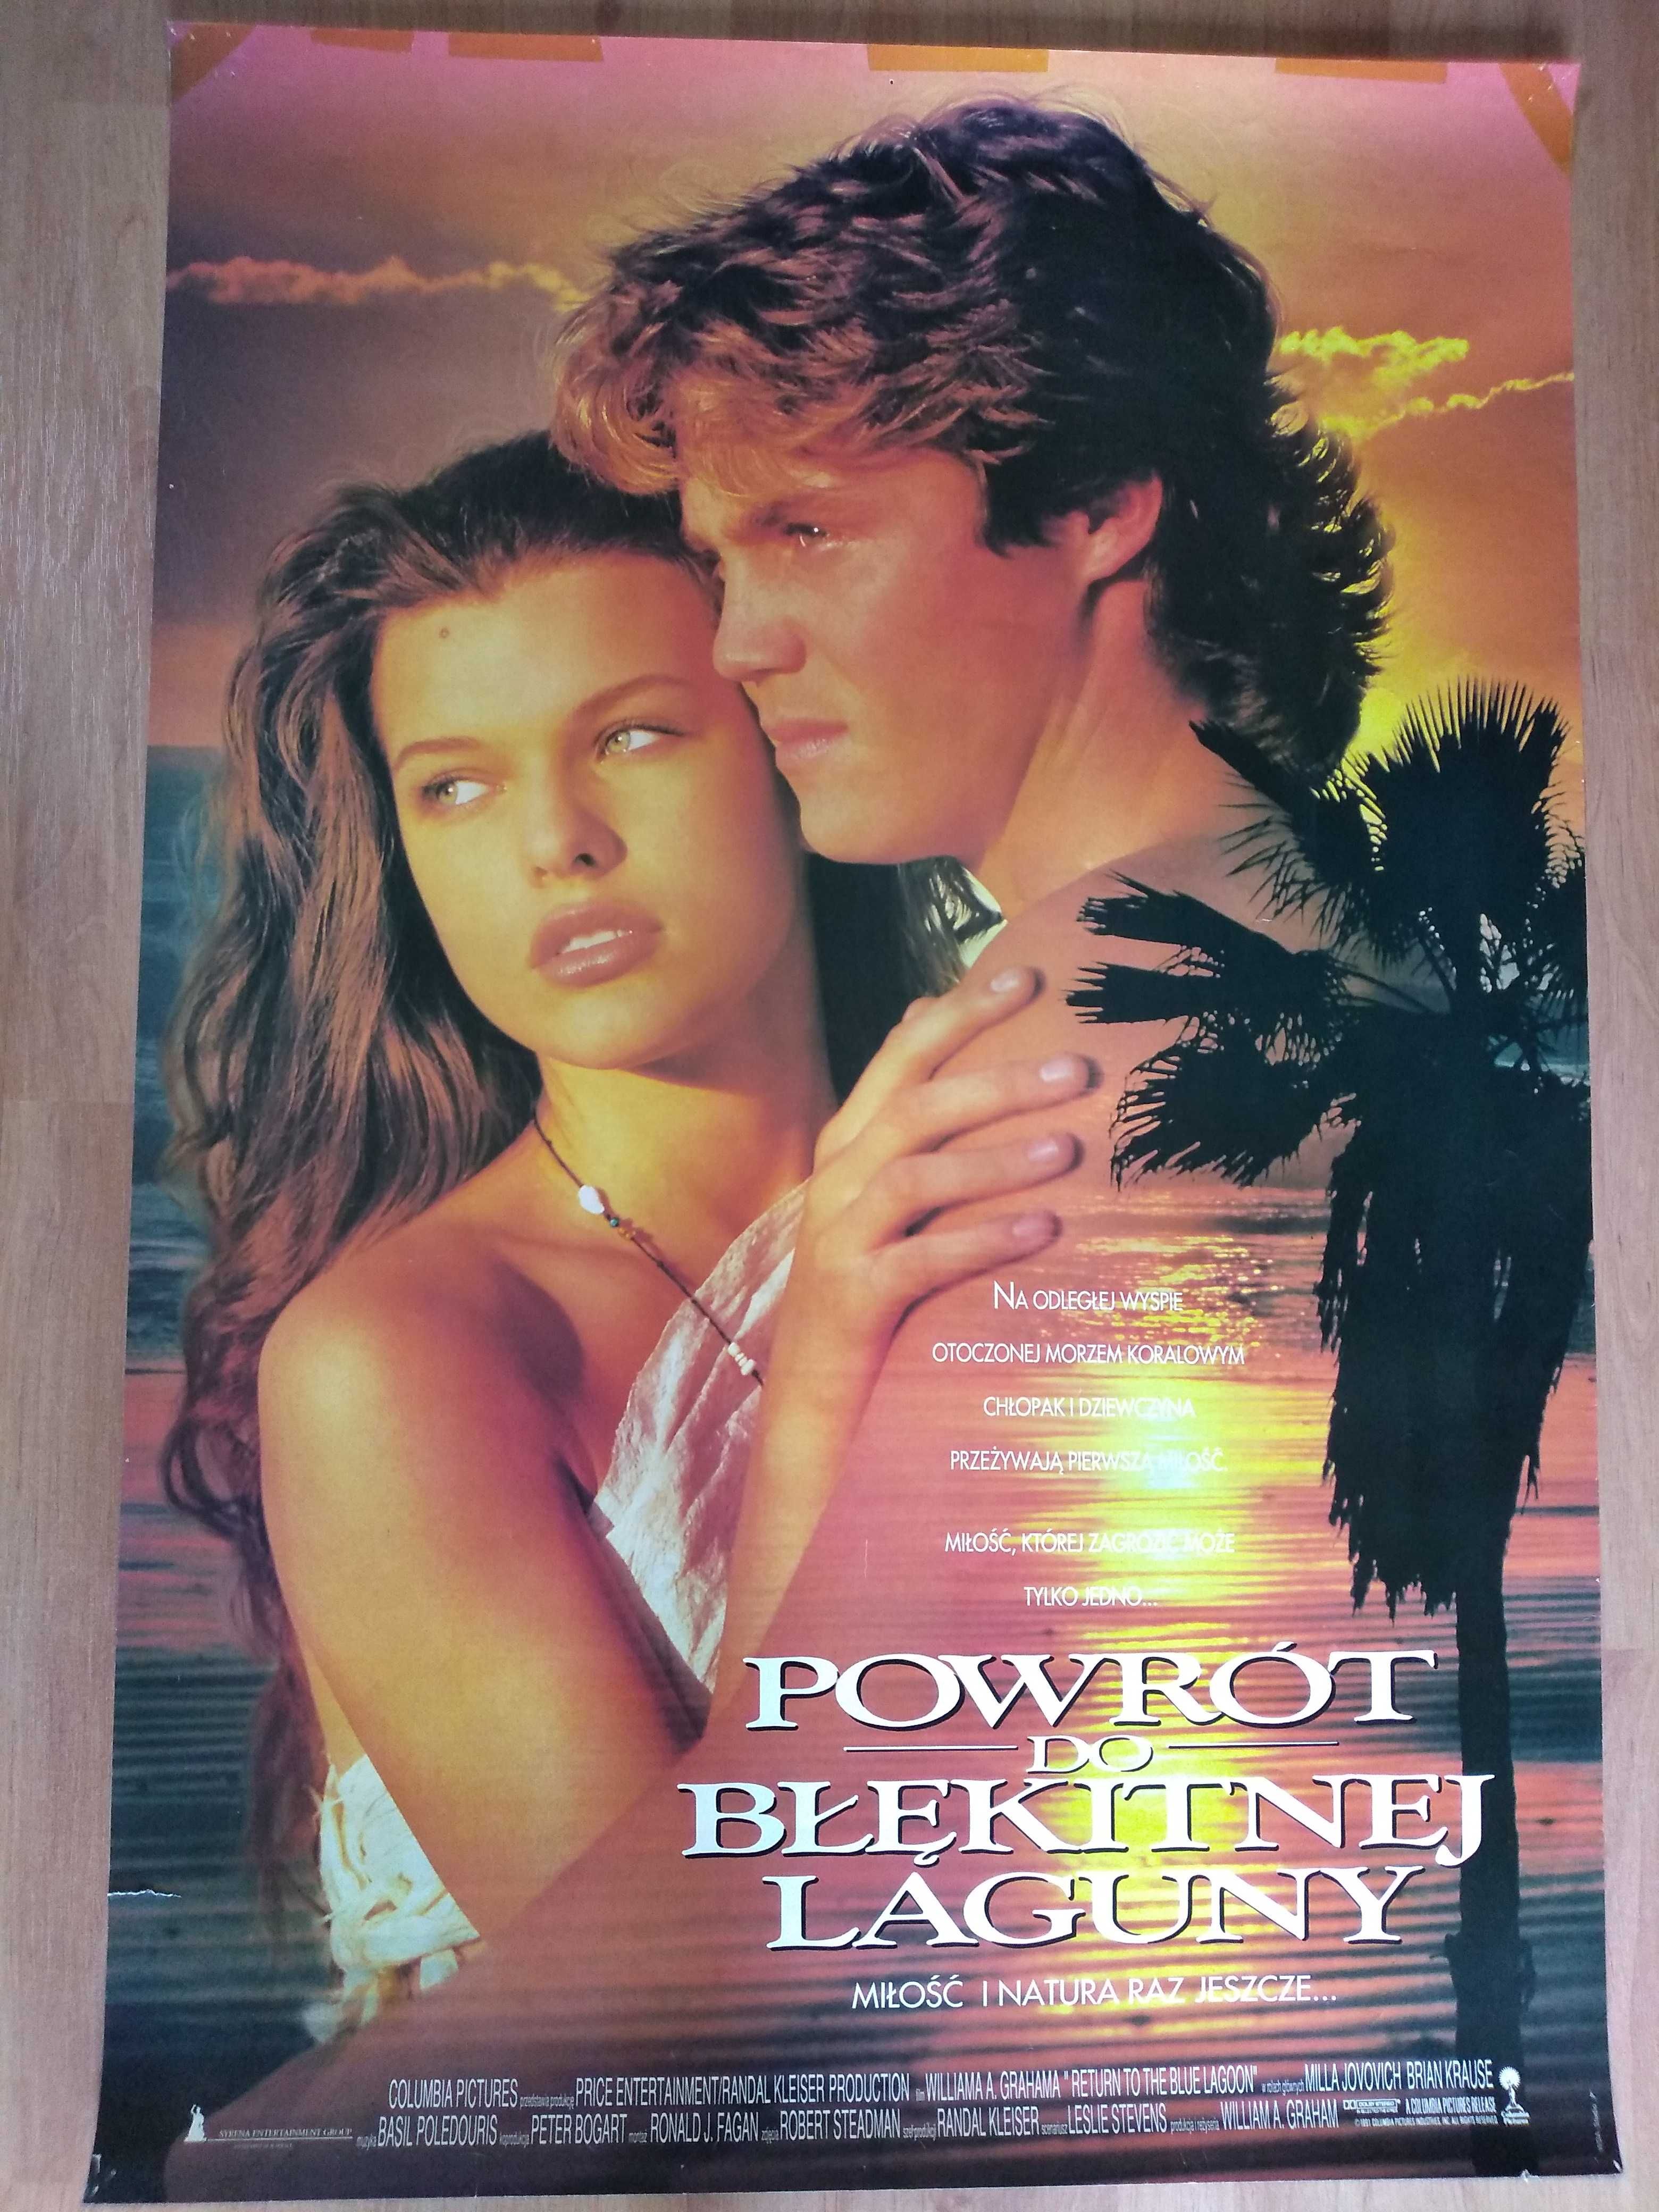 Plakat filmowy POWRÓT DO BŁĘKITNEJ LAGUNY/Oryginał z 1991 roku.